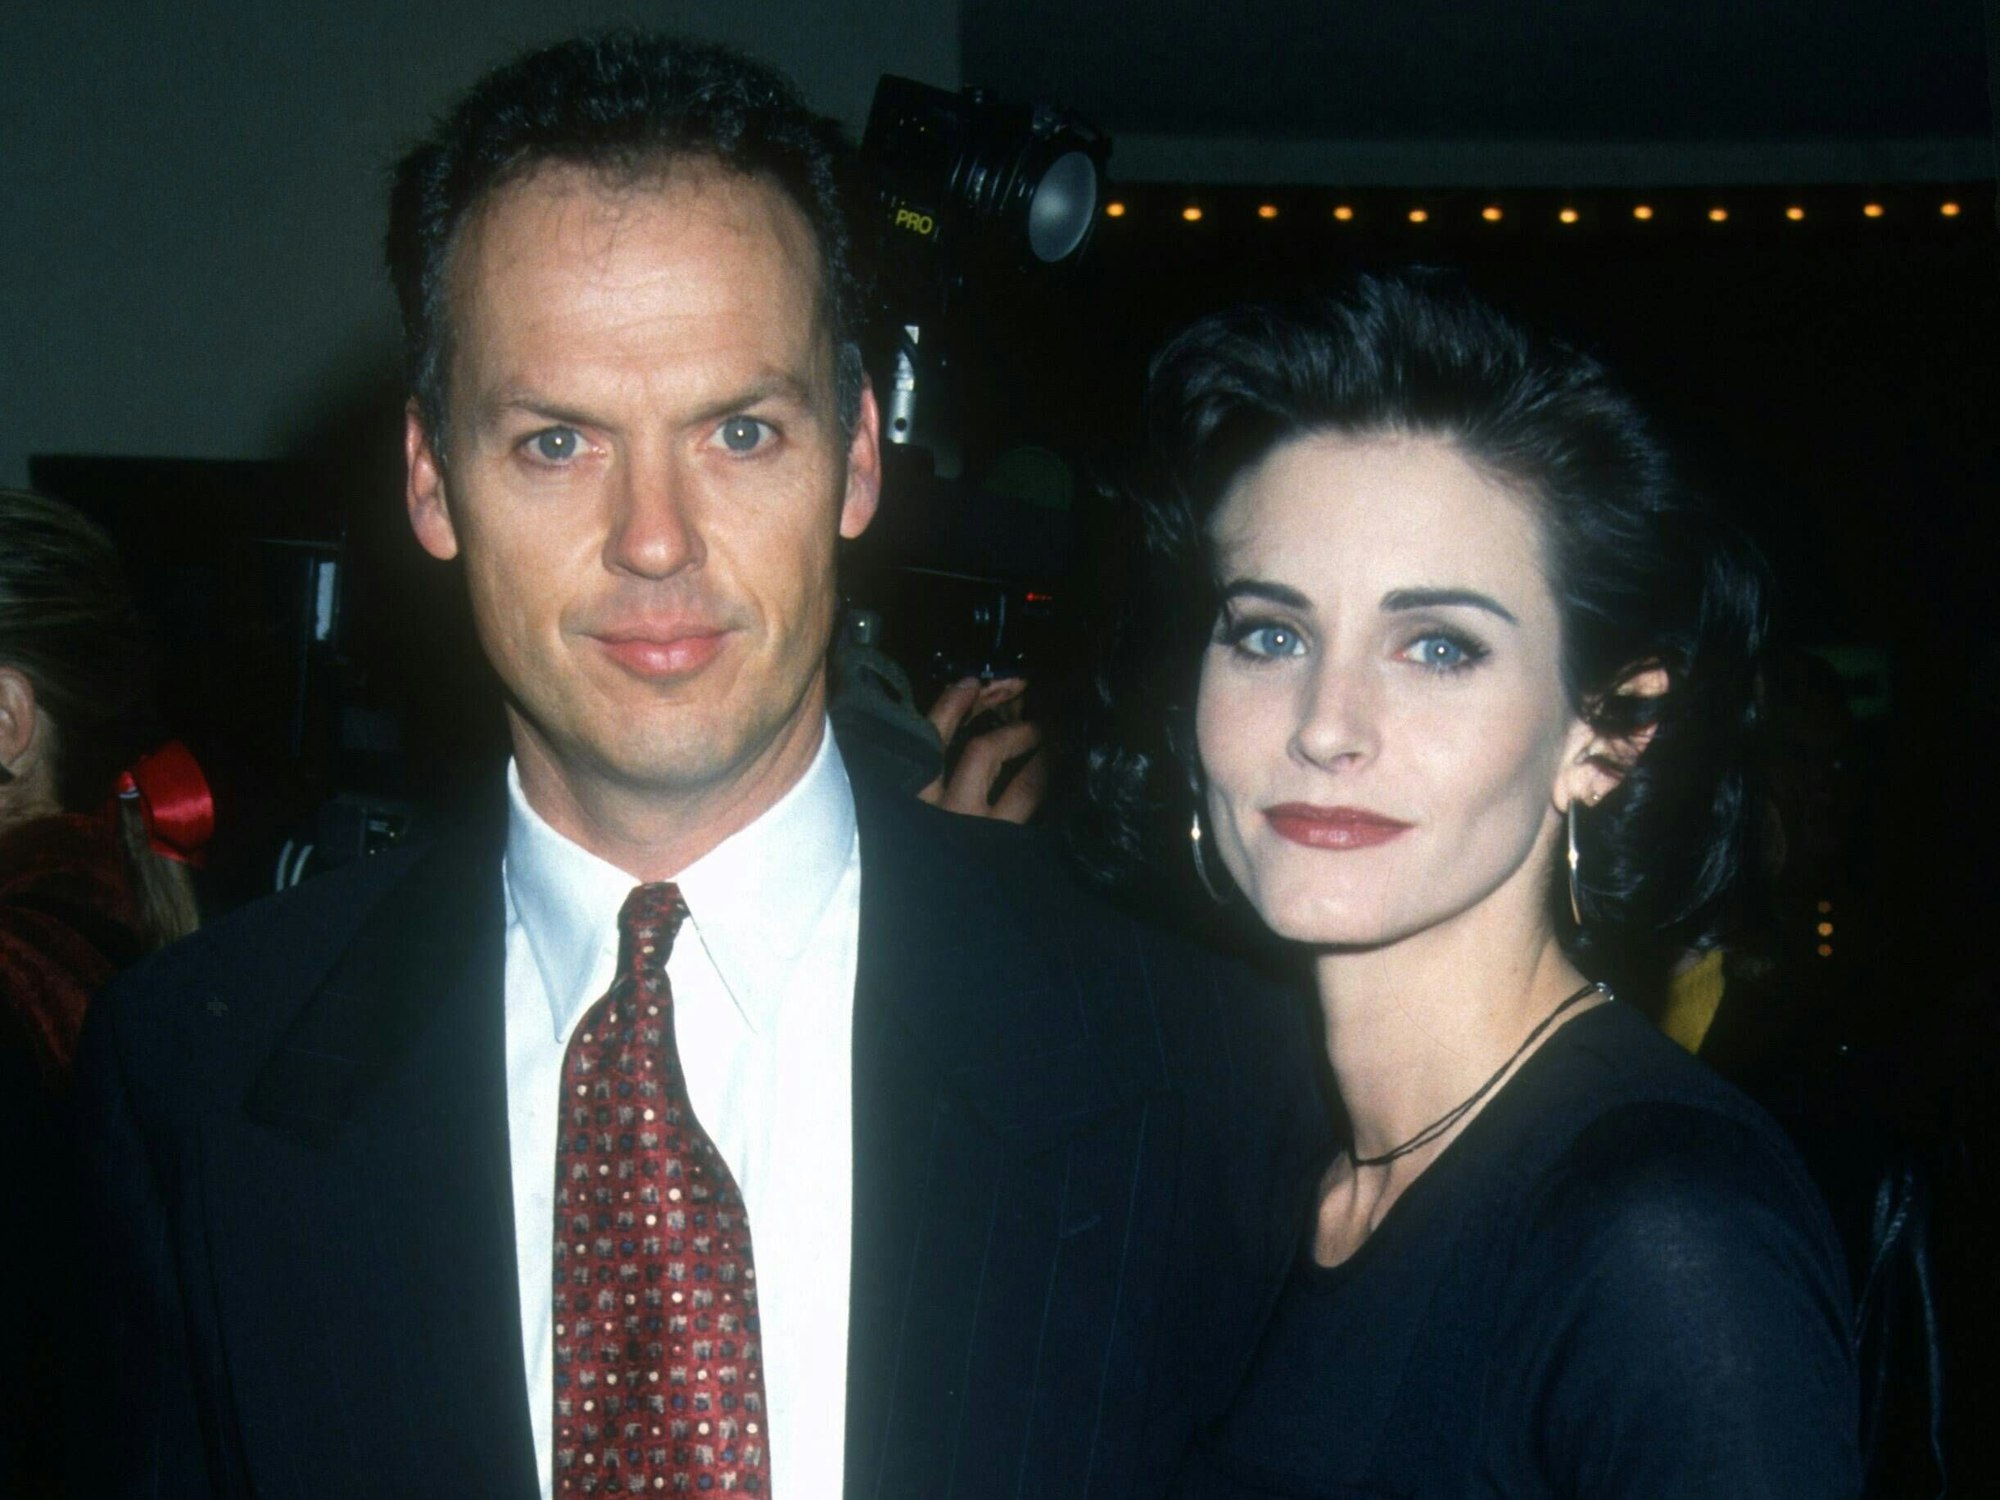 Das Foto zeigt die Schauspieler Michael Keaton und Courteney Cox, die lächelnd für ein Foto posieren. Der Aufnahmeort ist unbekannt.